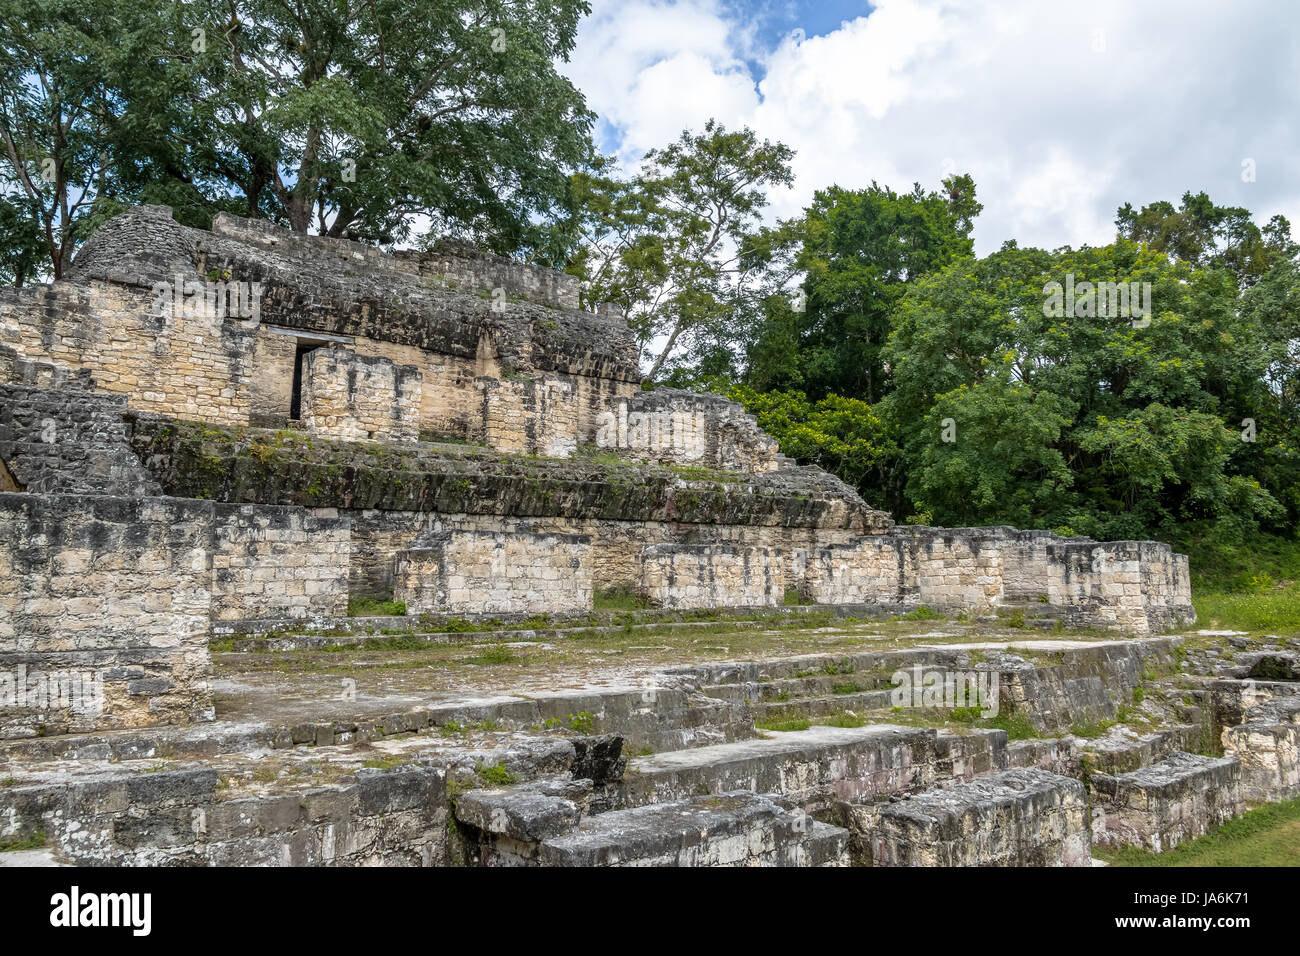 Mayan Ruins at Tikal National Park - Guatemala Stock Photo